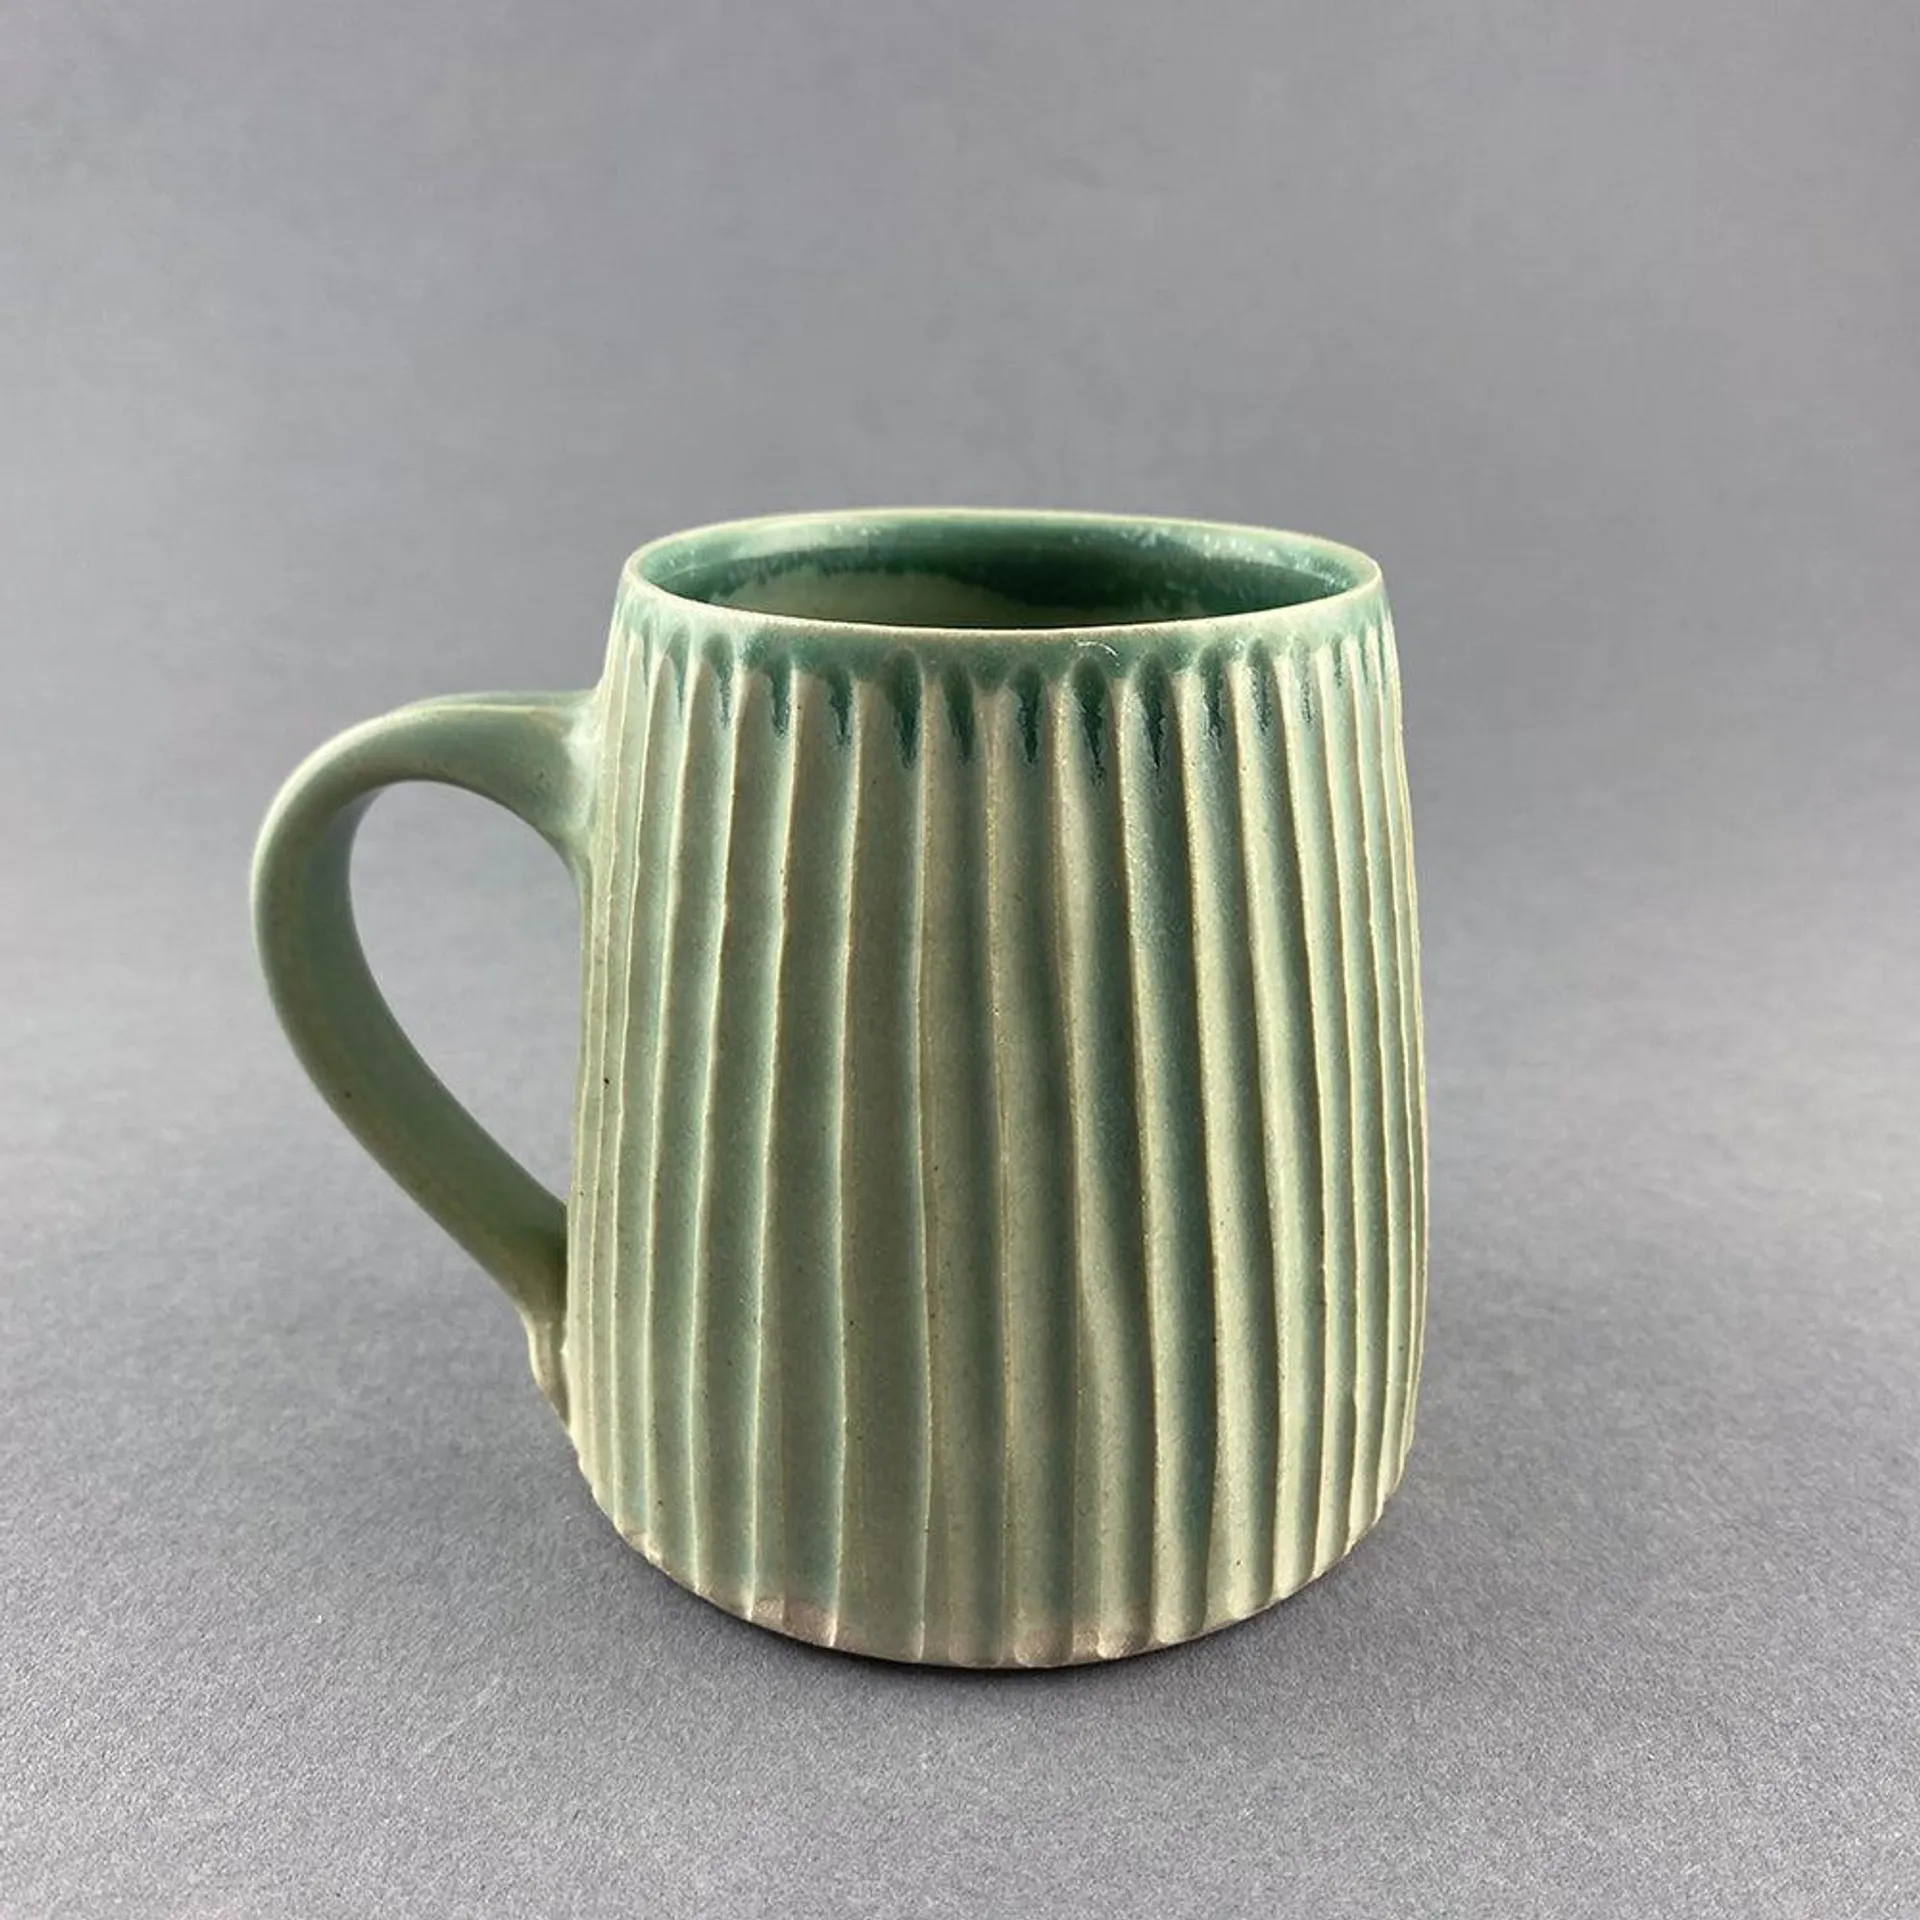 Standard Mug - Carved Celadon